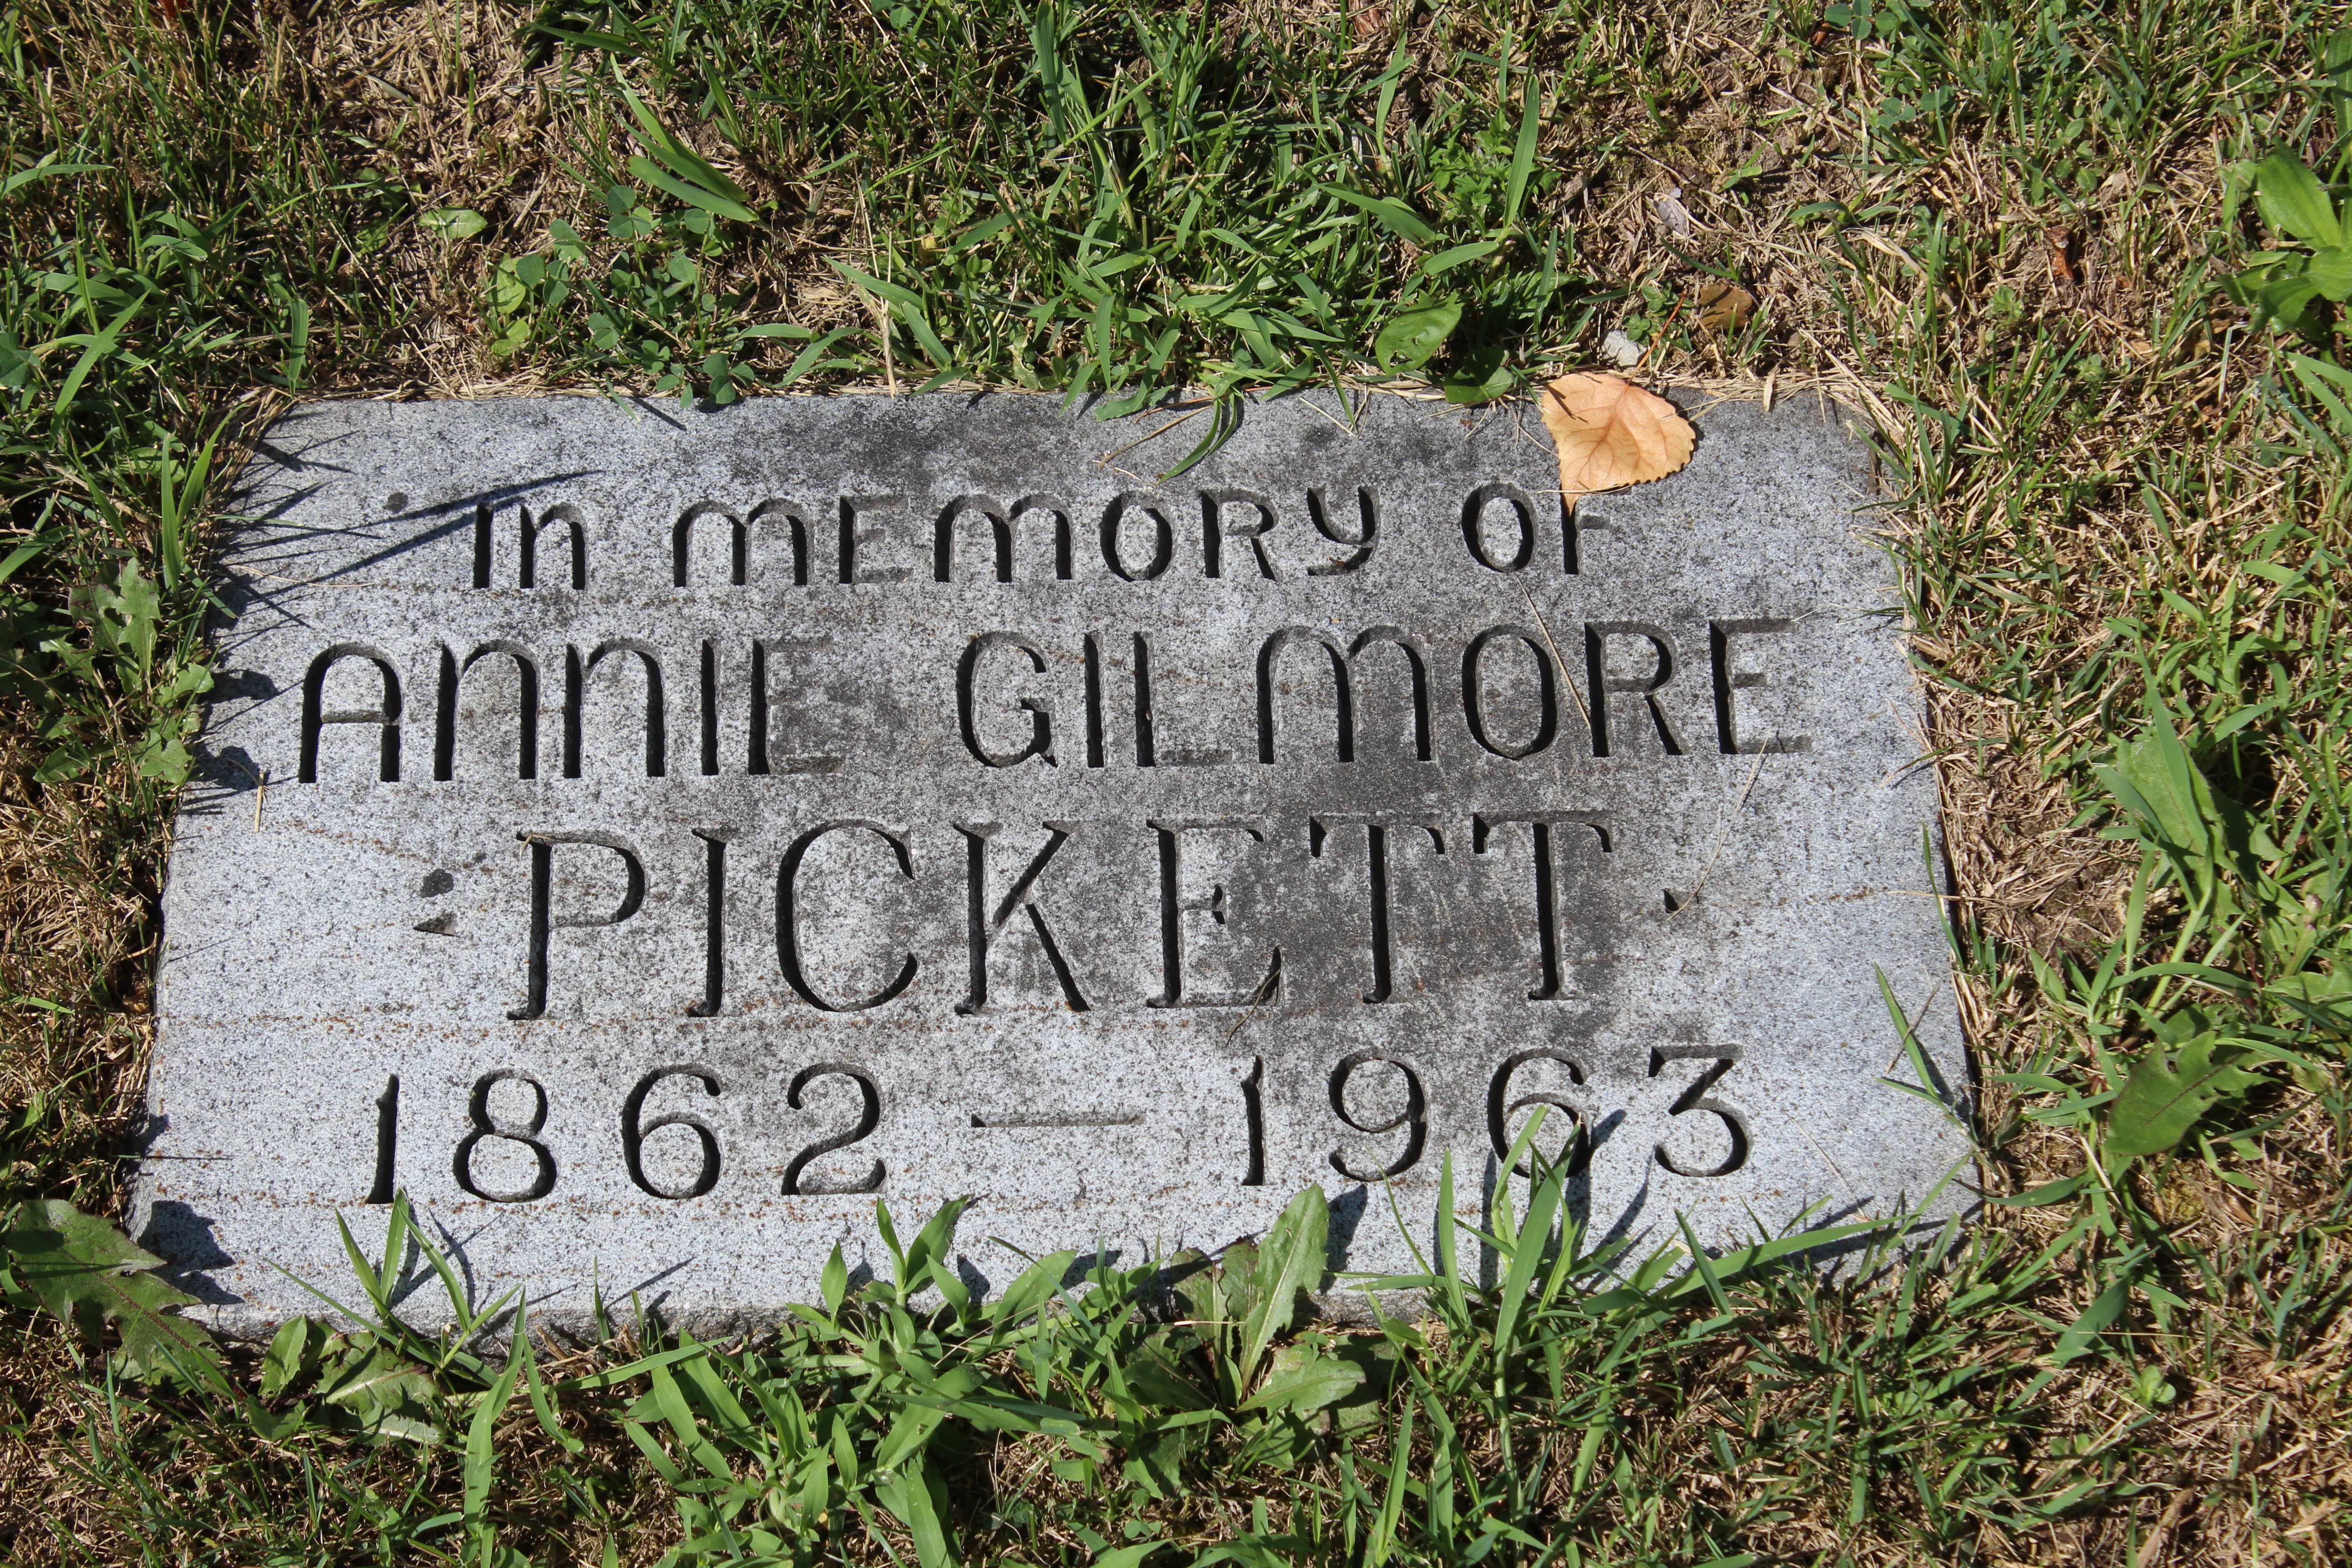 Annie Gilmore Pickett